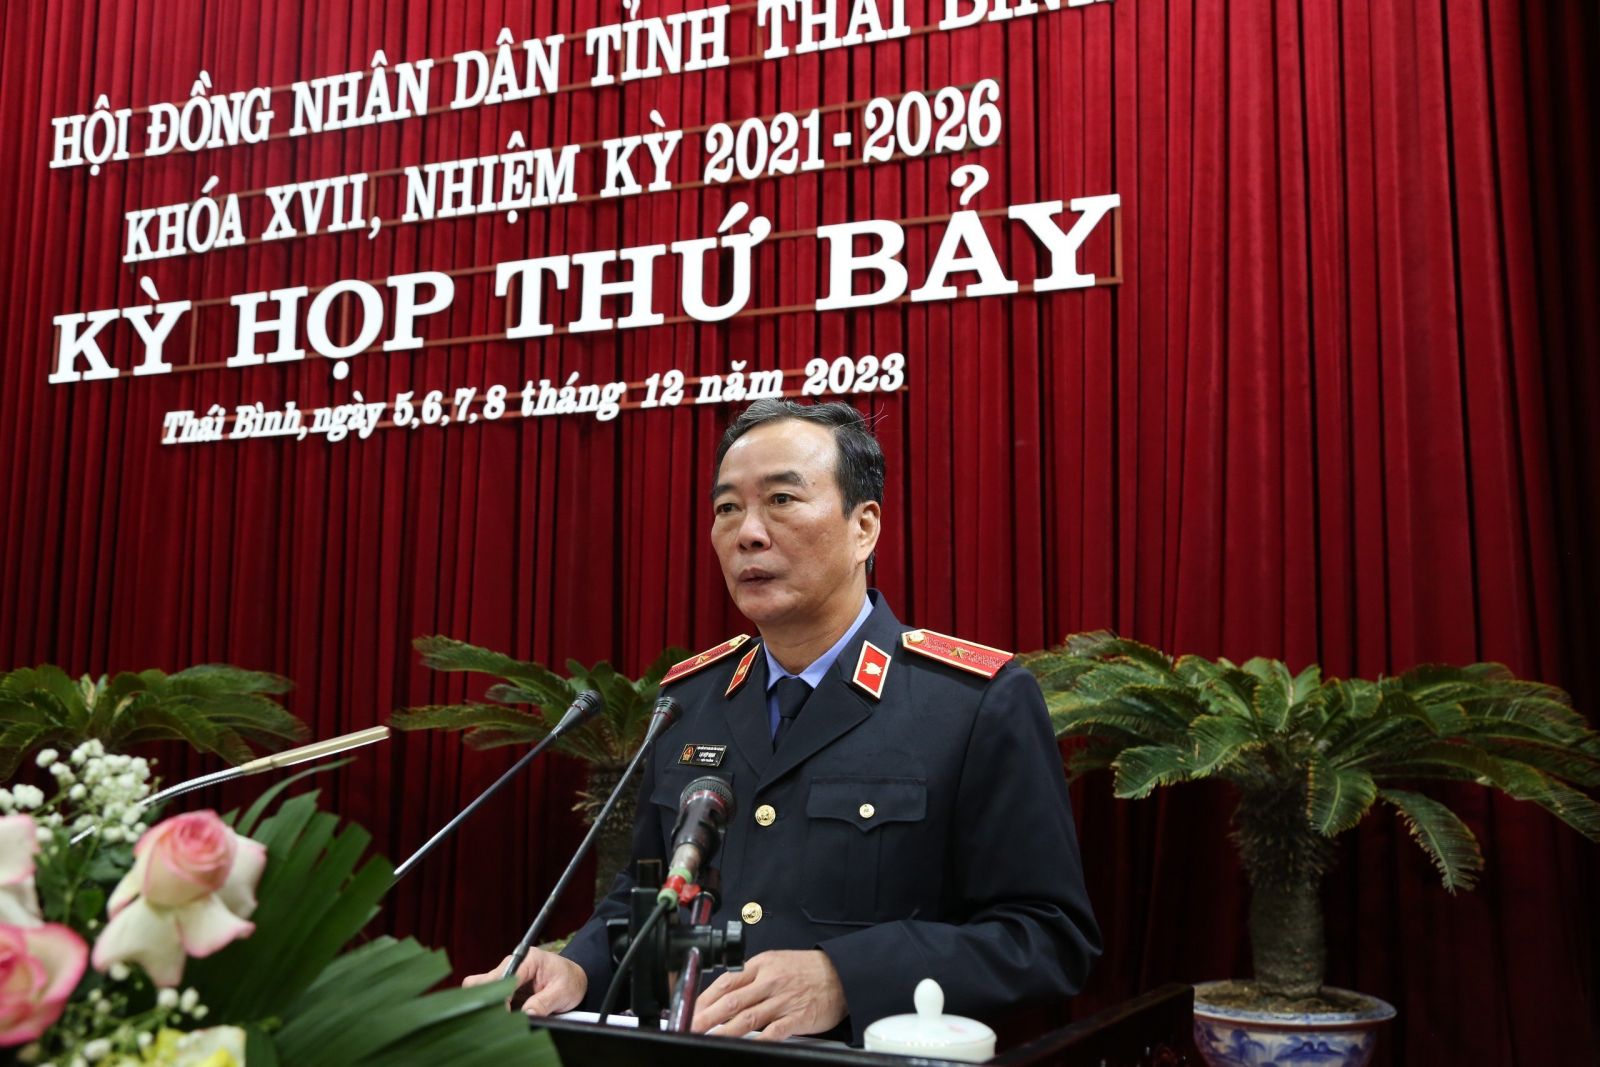 Viện trưởng VKSND tỉnh Thái Bình thông tin về lý do bắt ông Lưu Bình Nhưỡng - Ảnh 2.